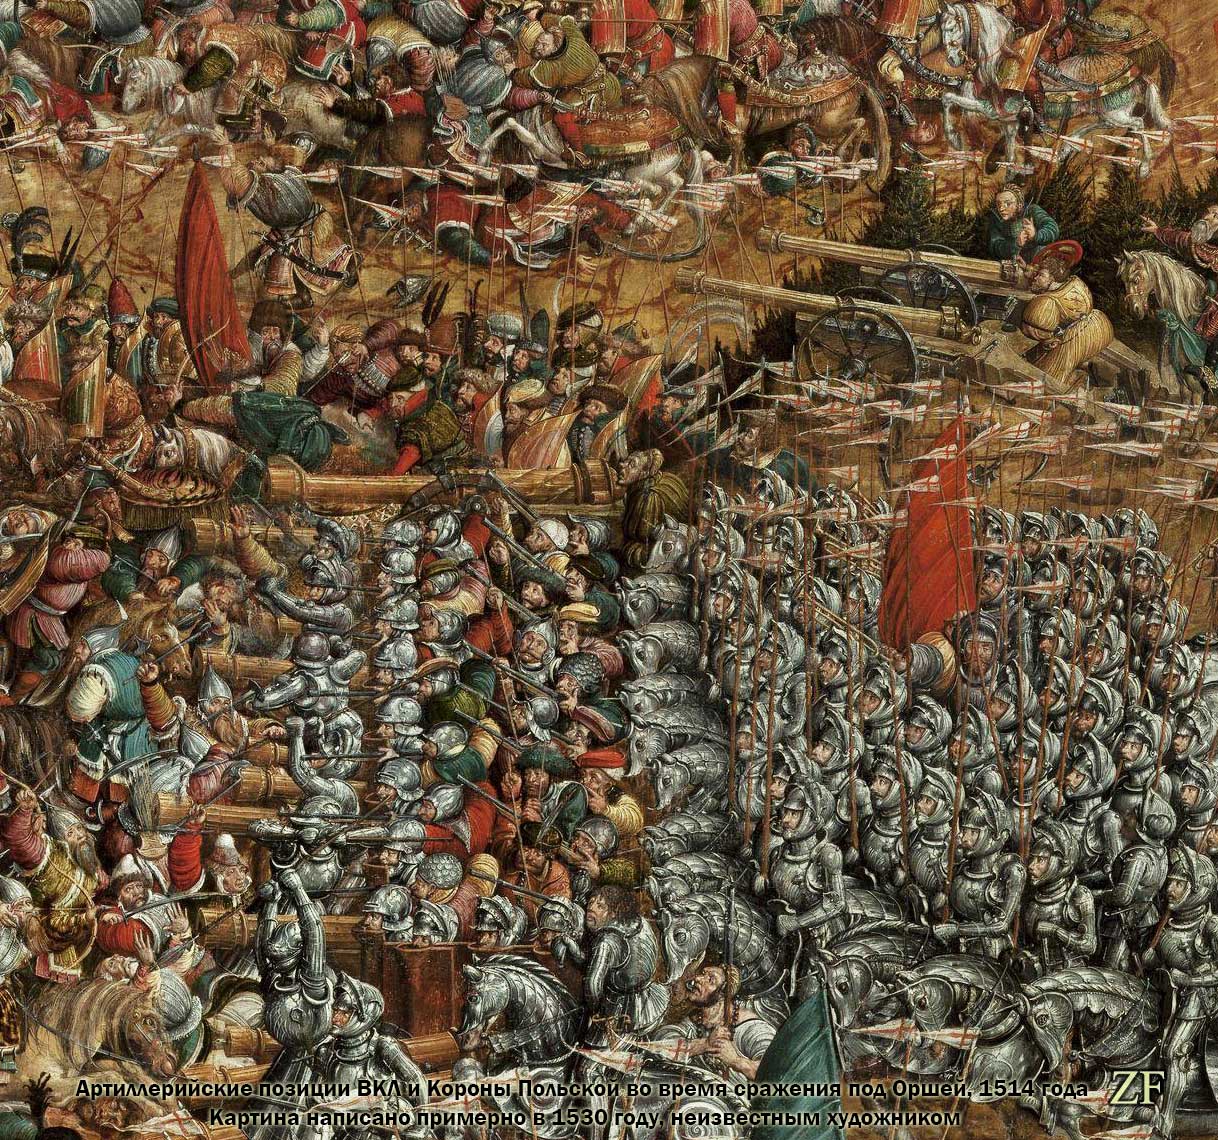 Артиллерийские позиции ВКЛ и Короны Польской во время сражения под Оршей, 1514 года Картина написано примерно в 1530 году, неизвестным художником